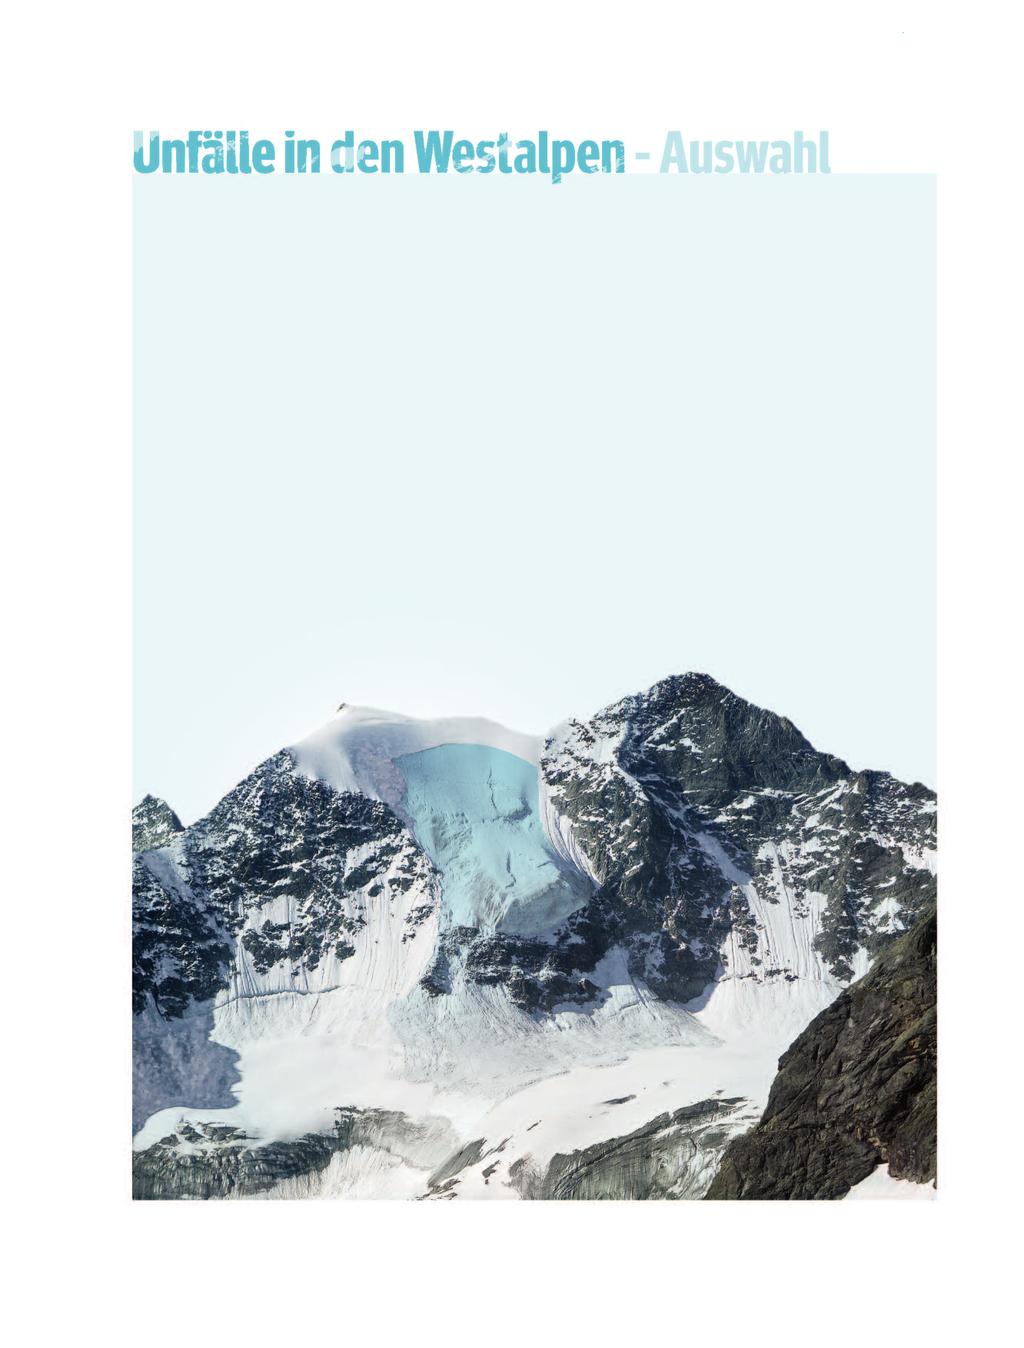 September 2015 - Dôme de Neige des Écrins, Frankreich Vier Deutsche und drei Tschechen werden bei einem Lawinenabgang ca. 100 Meter unterhalb des Gipfels am Dôme de Neige des Écrins (4.015 m) getötet.